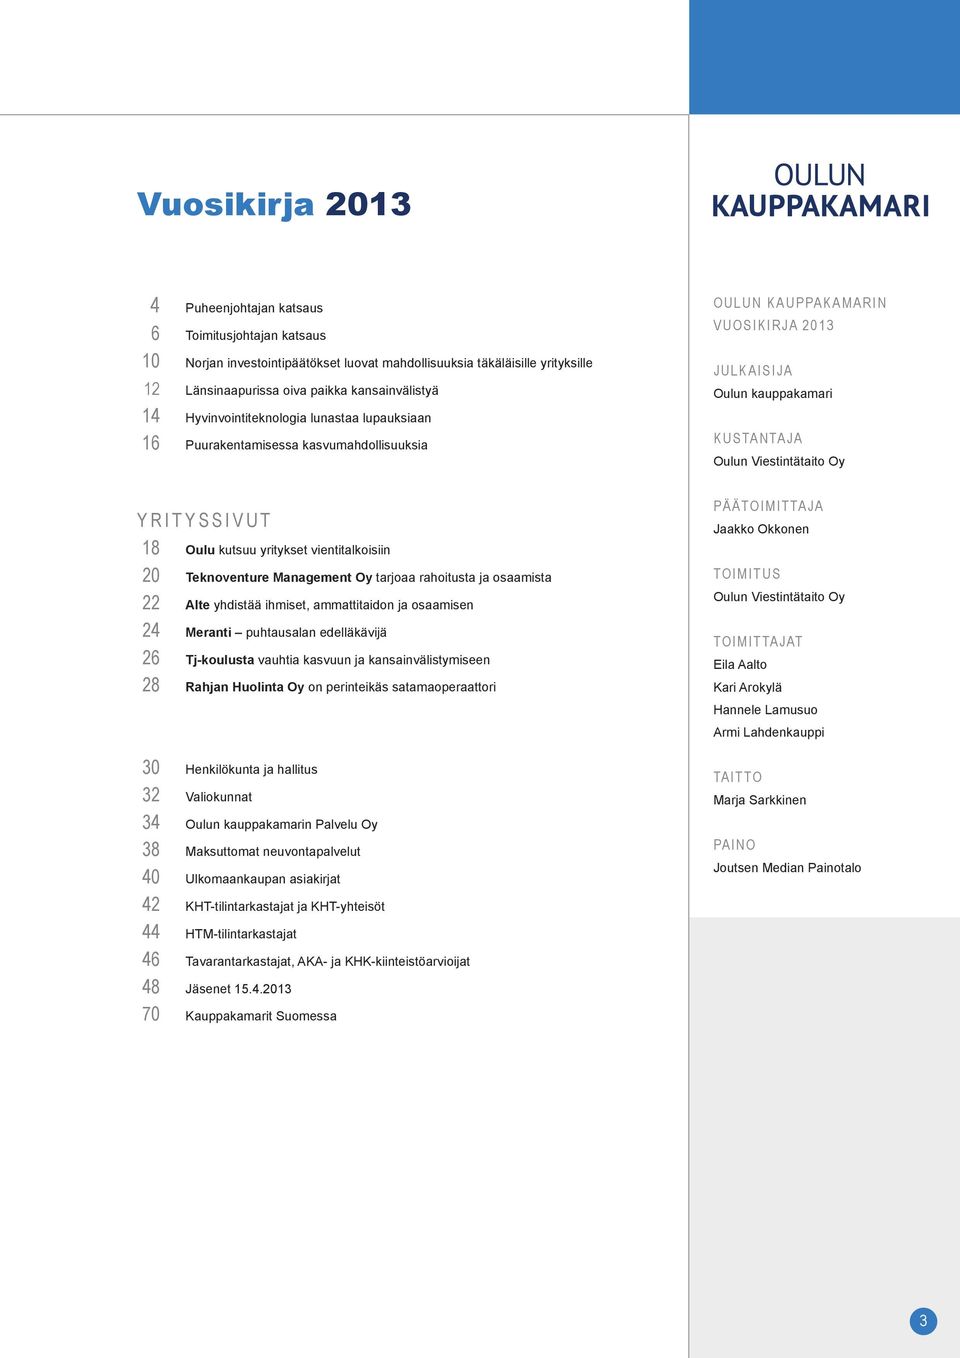 18 Oulu kutsuu yritykset vientitalkoisiin 20 Teknoventure Management Oy tarjoaa rahoitusta ja osaamista 22 Alte yhdistää ihmiset, ammattitaidon ja osaamisen 24 Meranti puhtausalan edelläkävijä 26